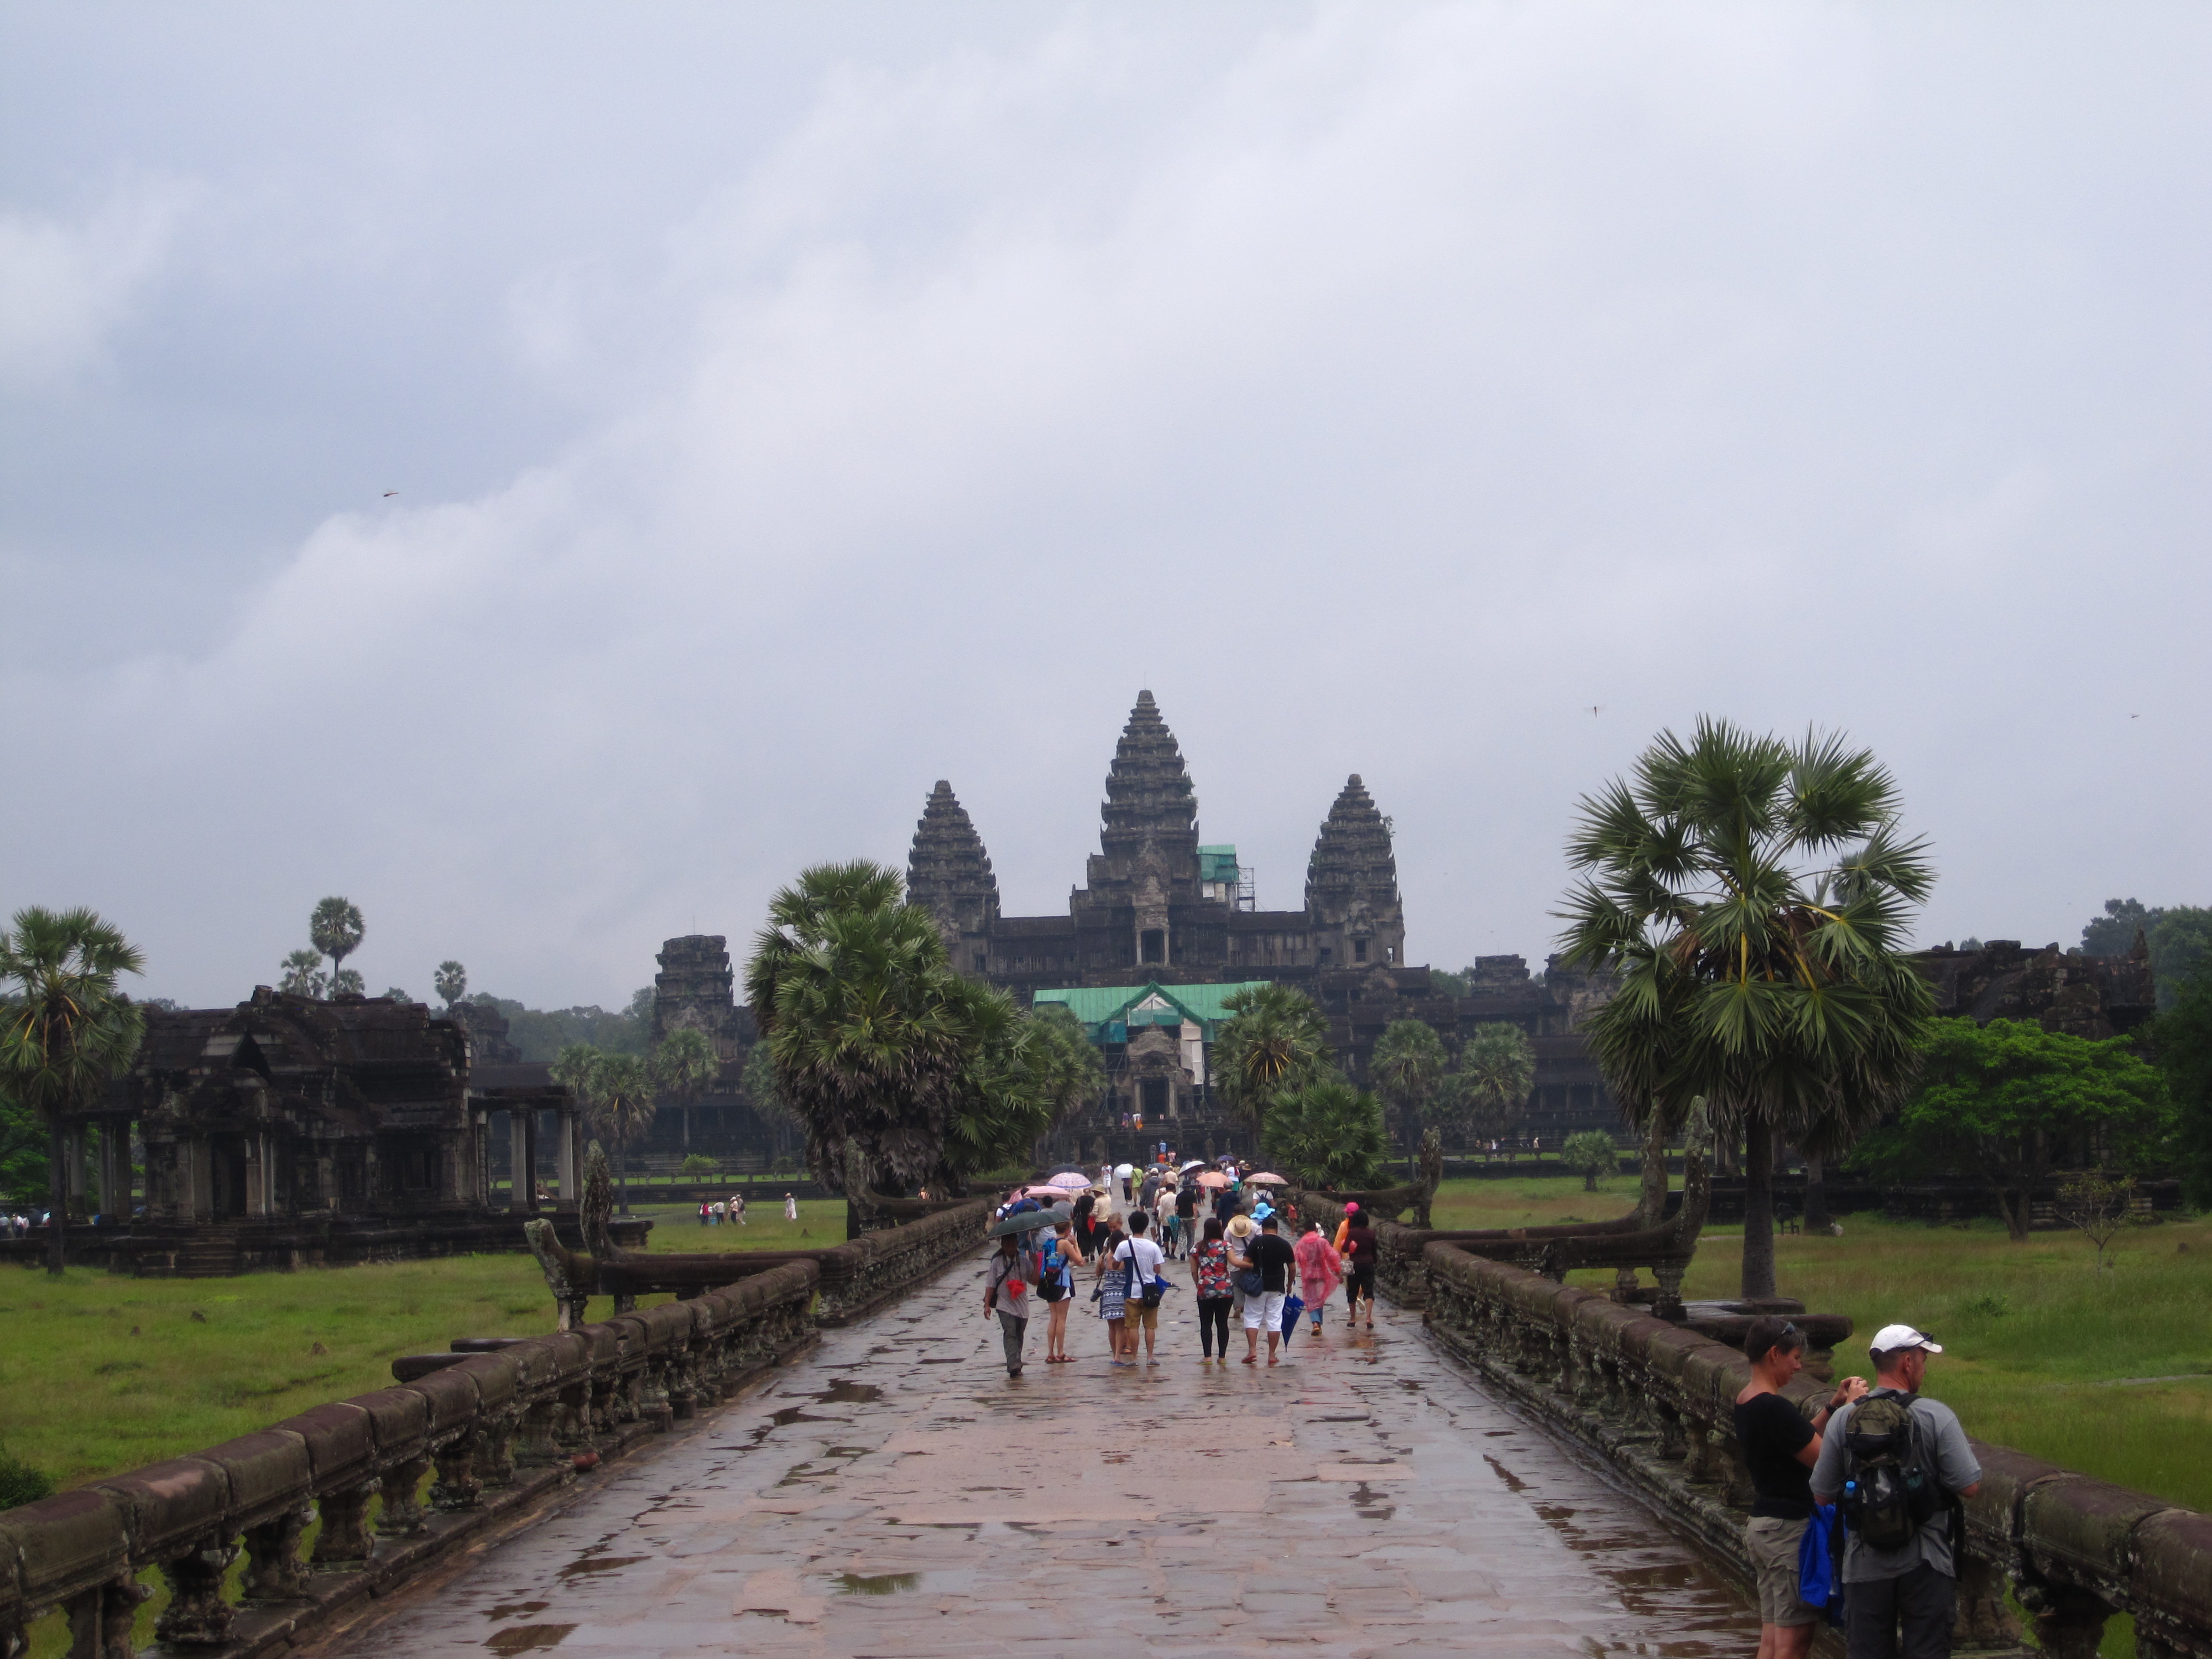 Angor Wat Temple Complex